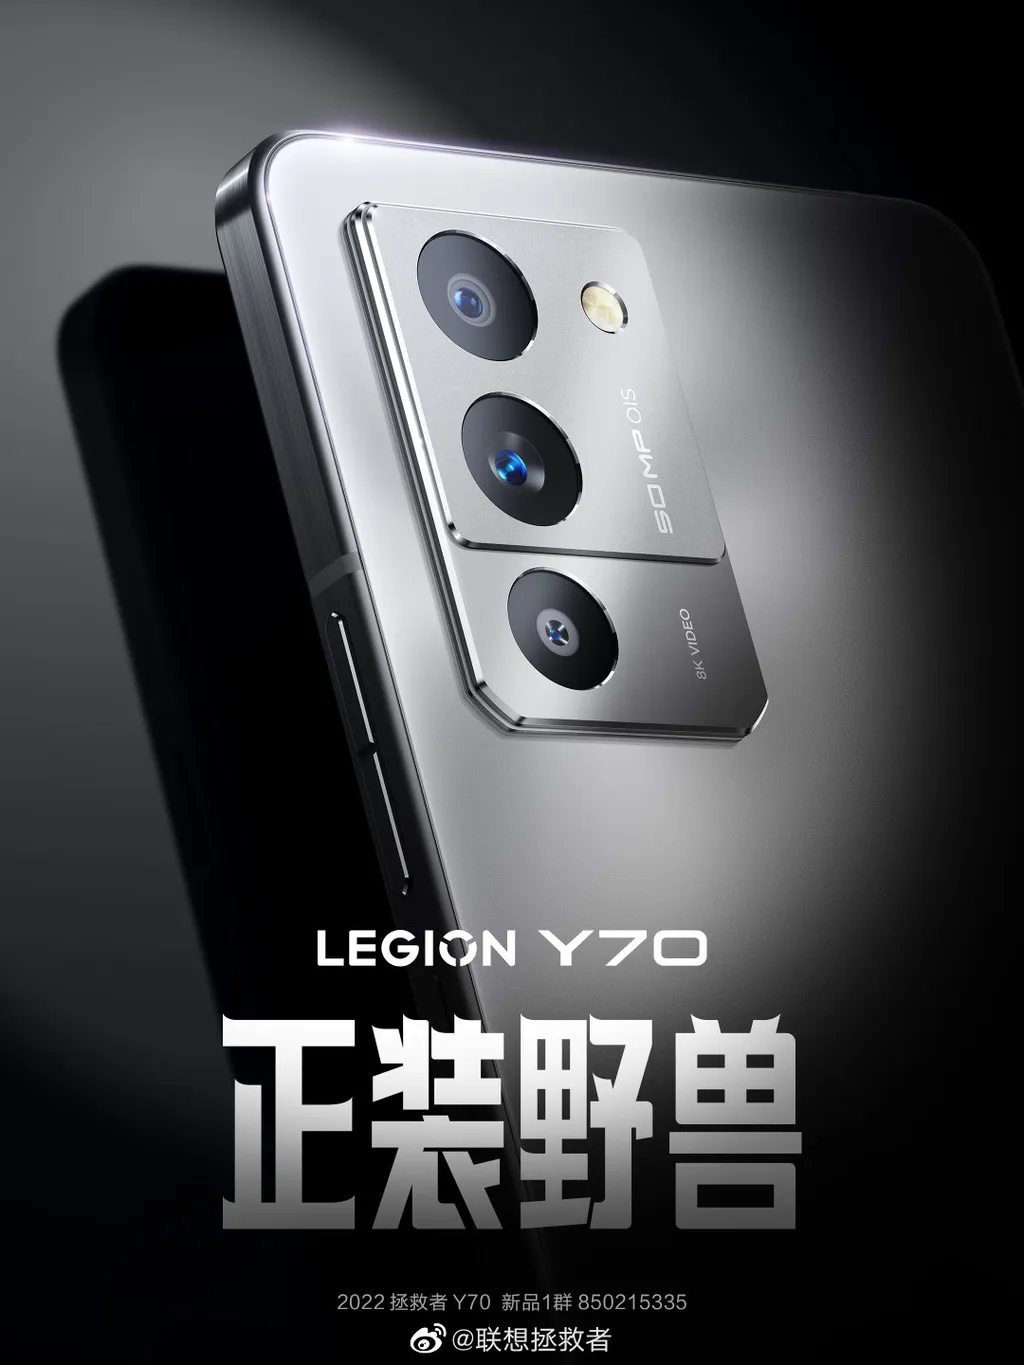 Imagem promocional do Lenovo Legion Y70 (Imagem: Reprodução/Weibo)